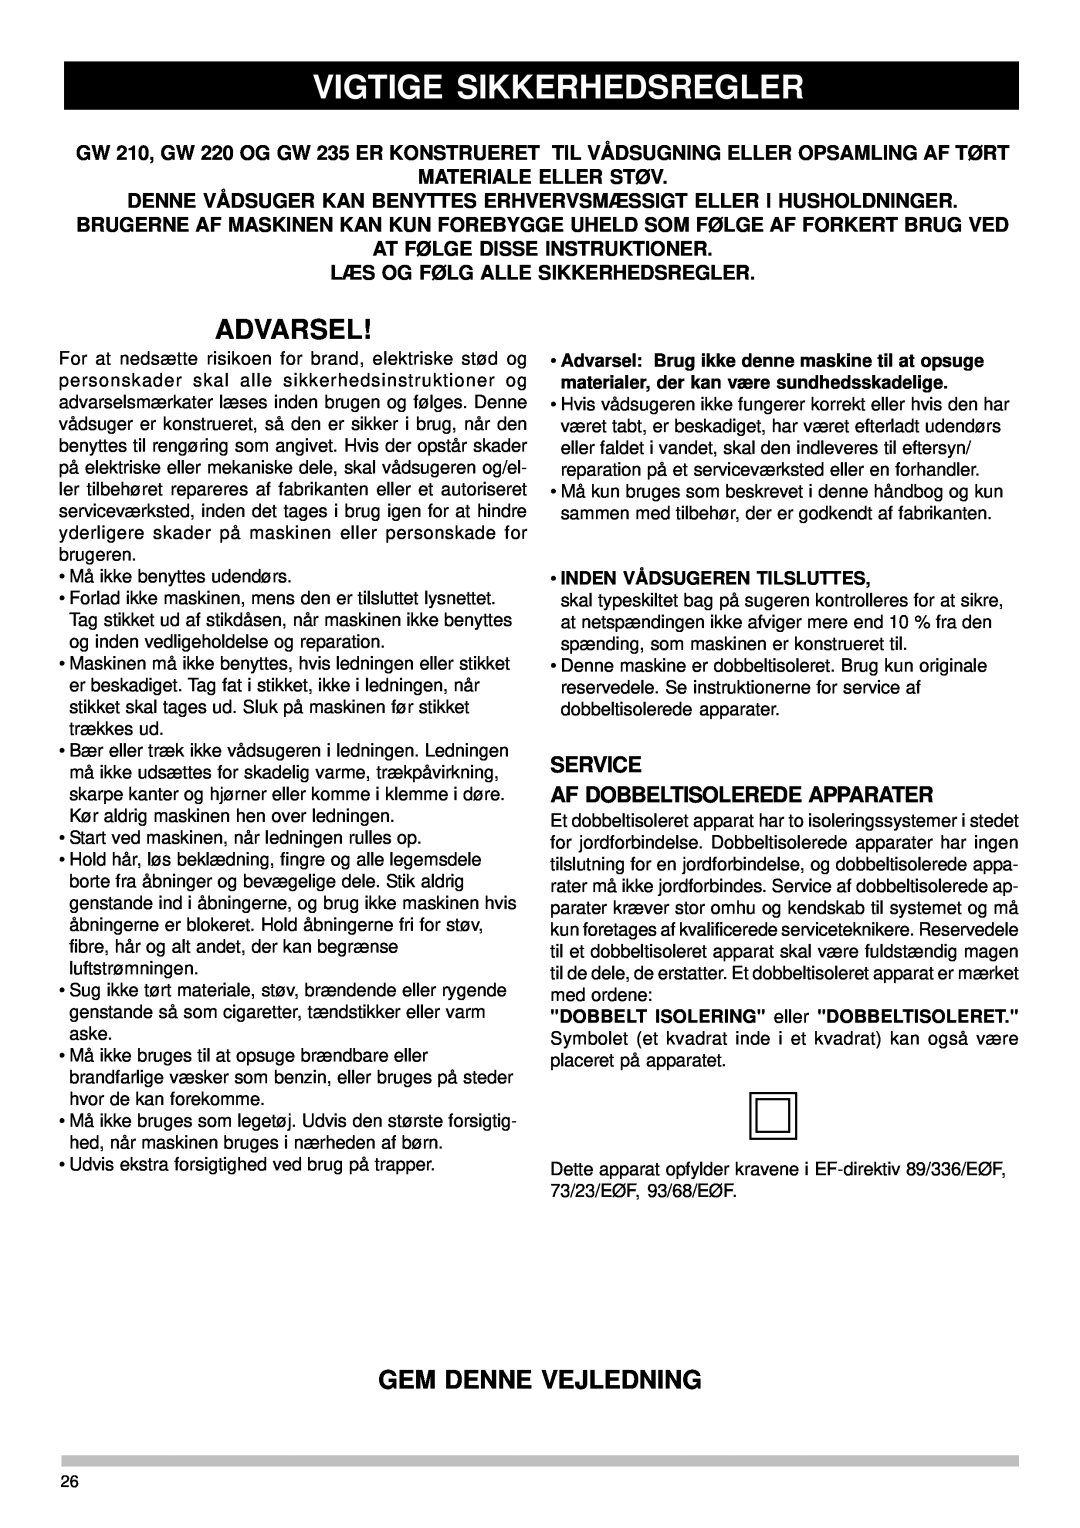 Nilfisk-Advance America GW 210, GW 235 manual Vigtige Sikkerhedsregler, Advarsel, Gem Denne Vejledning, Materiale Eller Støv 